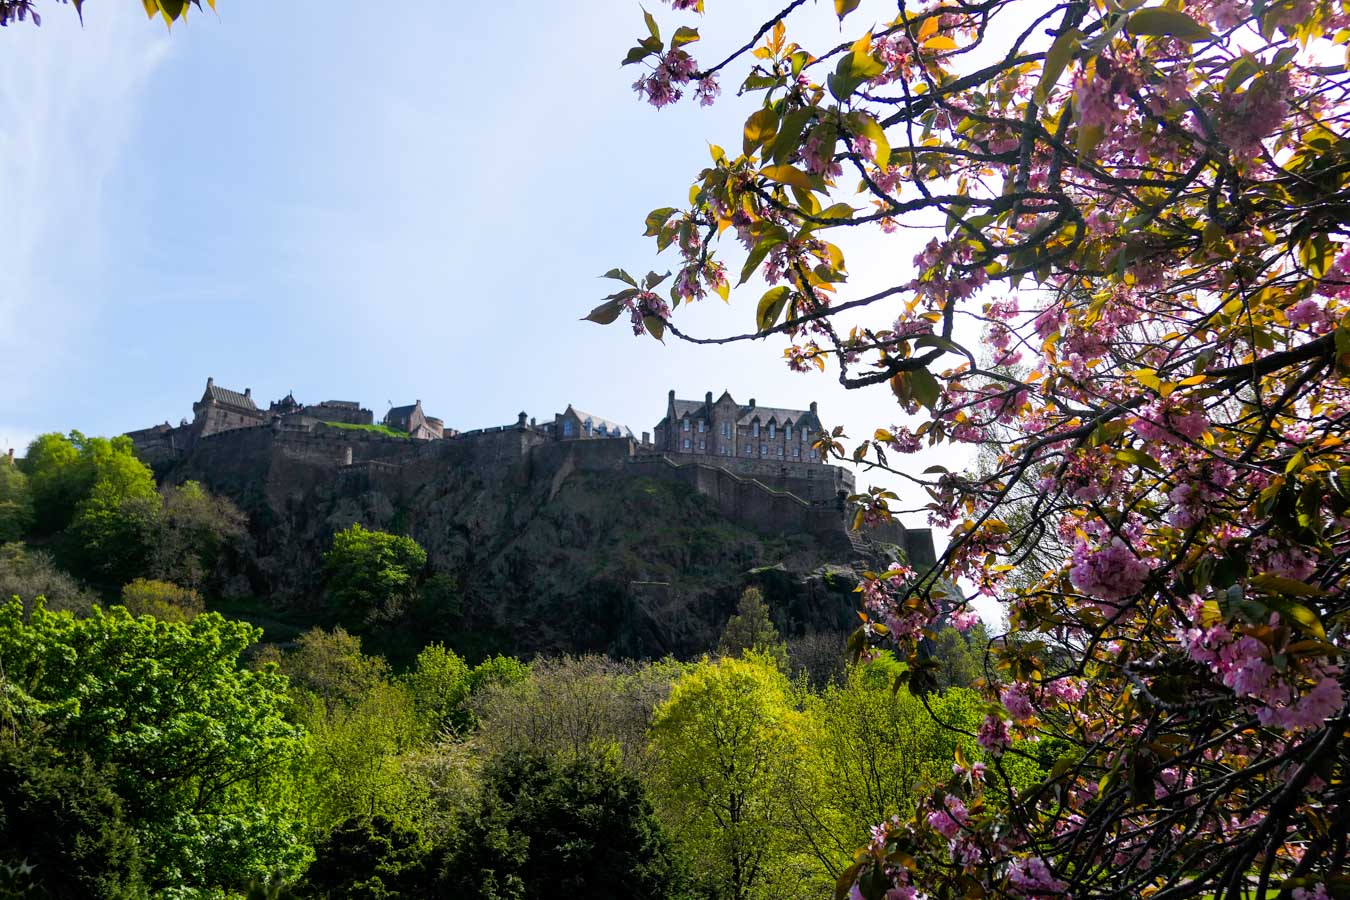 Scotland Palaces + Castles to Visit - Edinburgh Castle